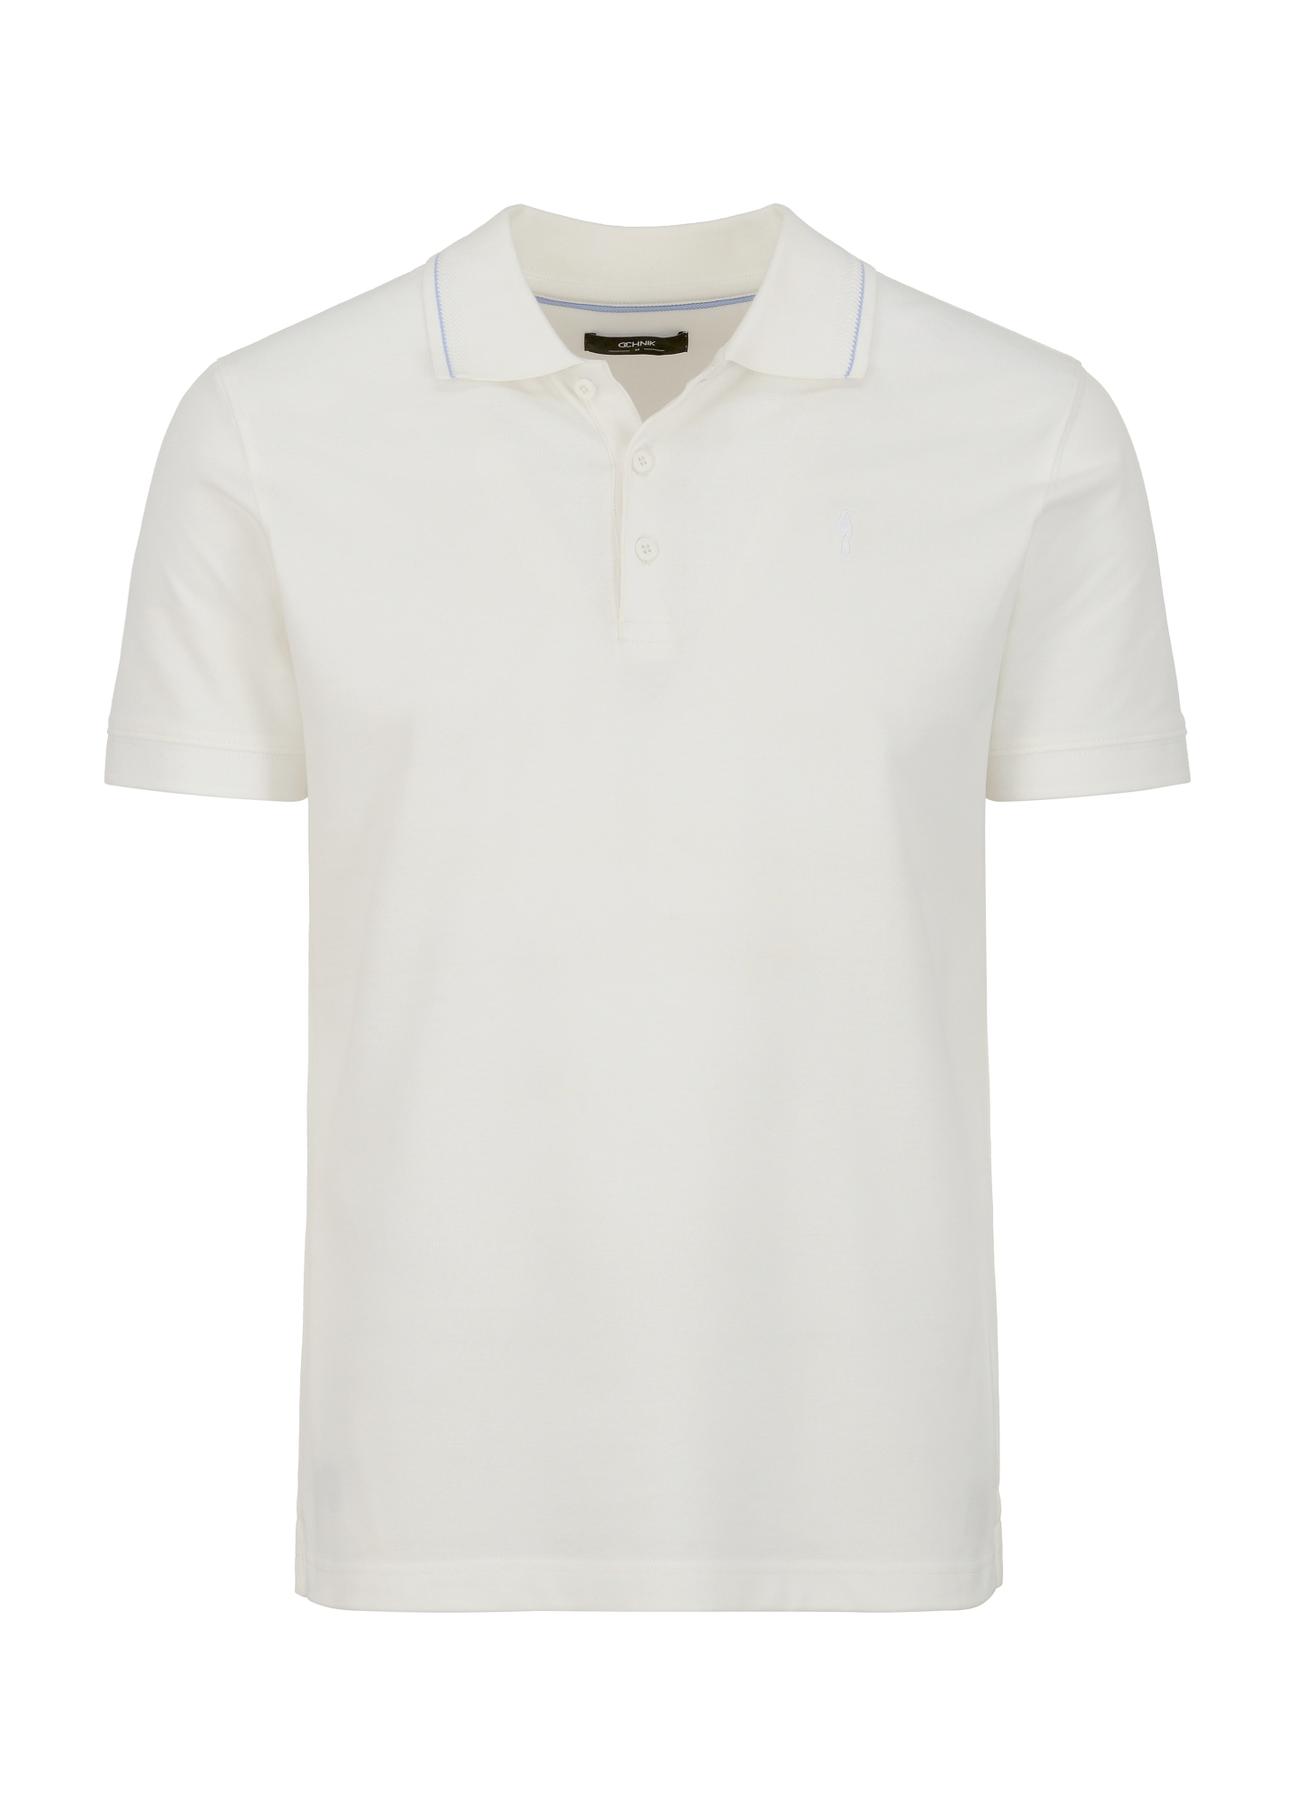 Biała koszulka polo POLMT-0056-11(W23)